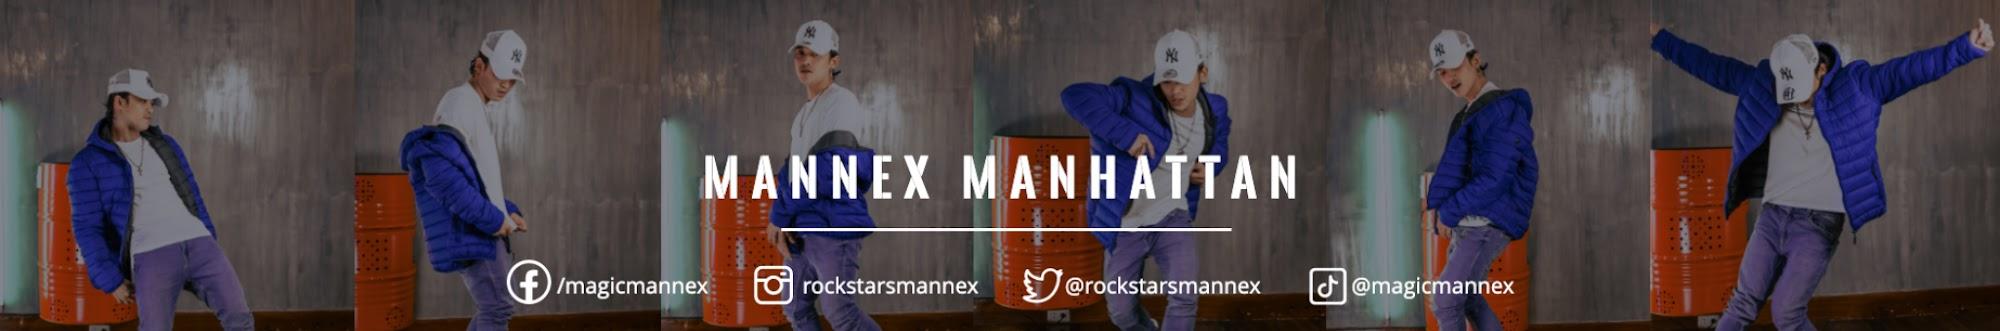 Mannex Manhattan